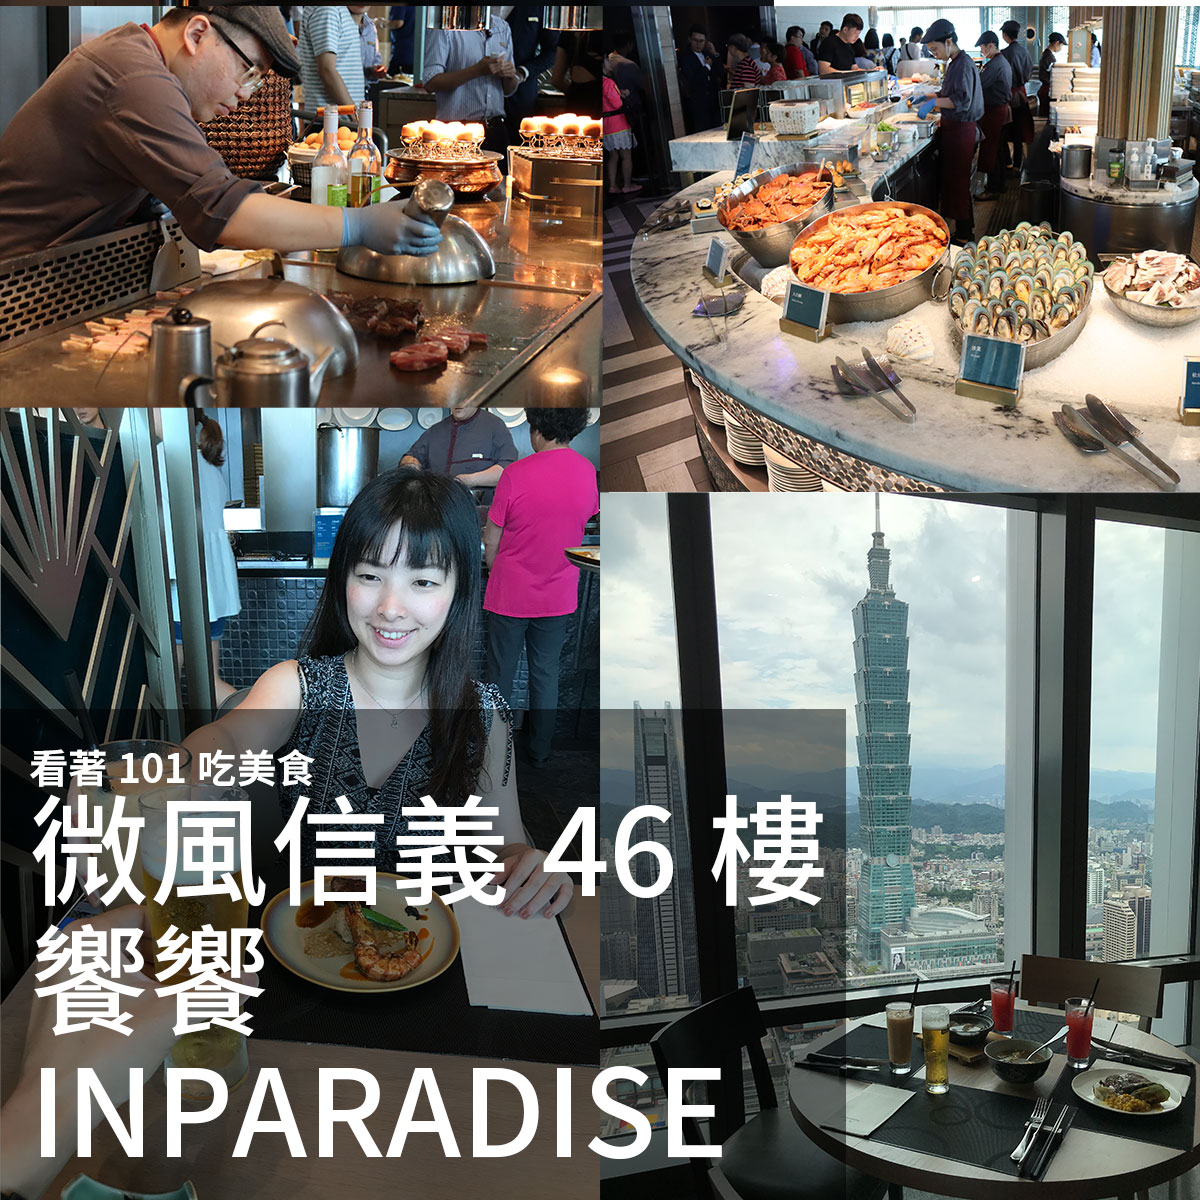 饗饗INPARADISE 微風信義46樓 看著台北101吃美食 自助吃到飽